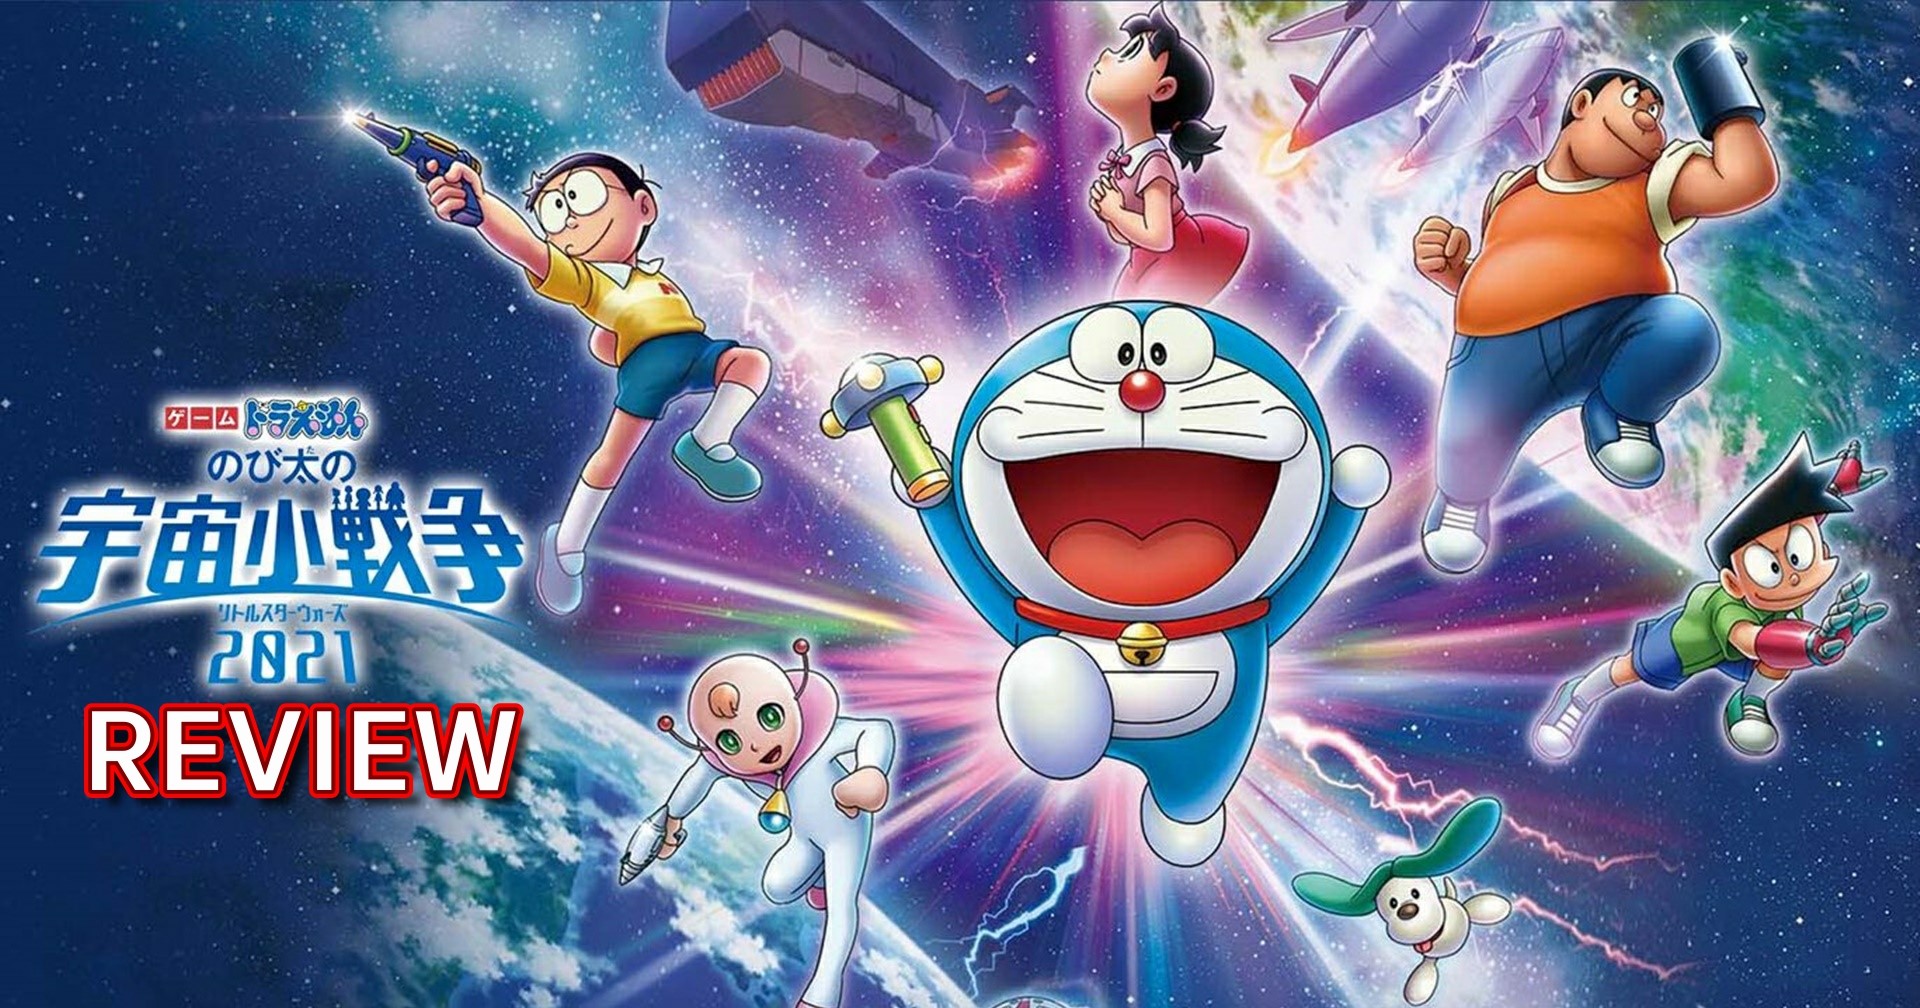 รีวิวเกม Doraemon Nobita Little Star Wars 2021 โดราเอมอนฉบับ Mario Party